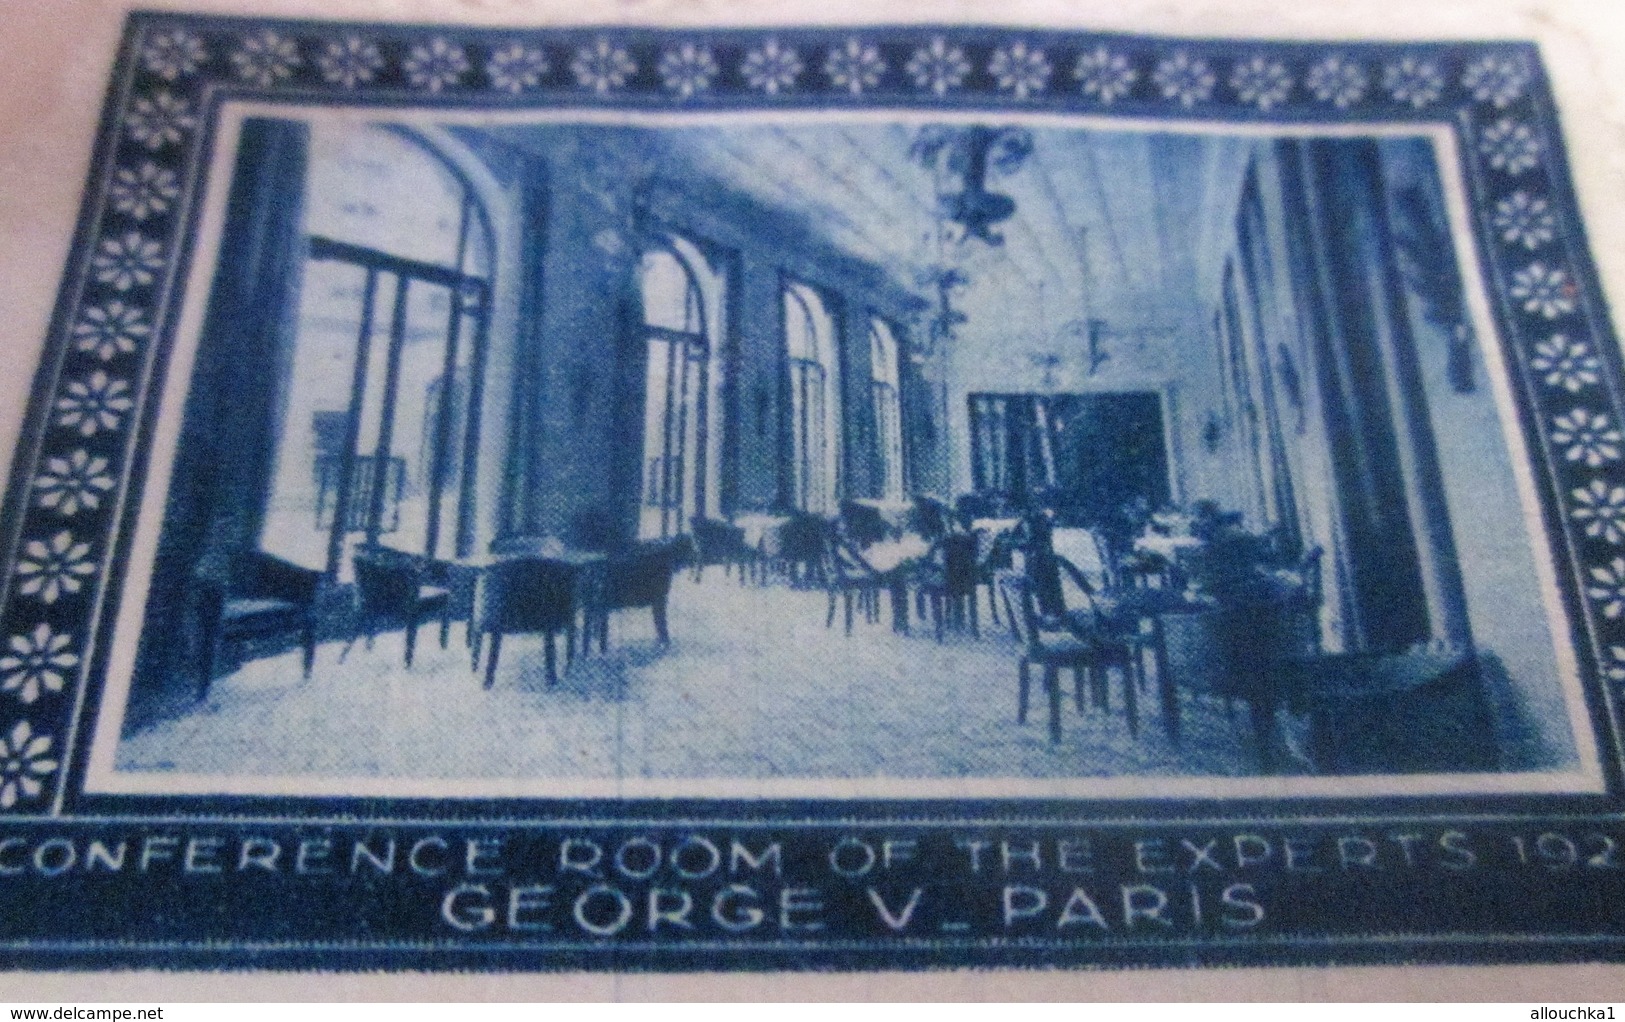 PARIS 1928 CONFERENCE ROOM  OF THE EXPORTS-HOTEL GEORGES V PARIS Timbre Vignette Erinnophilie -Neuf * - Tourisme (Vignettes)